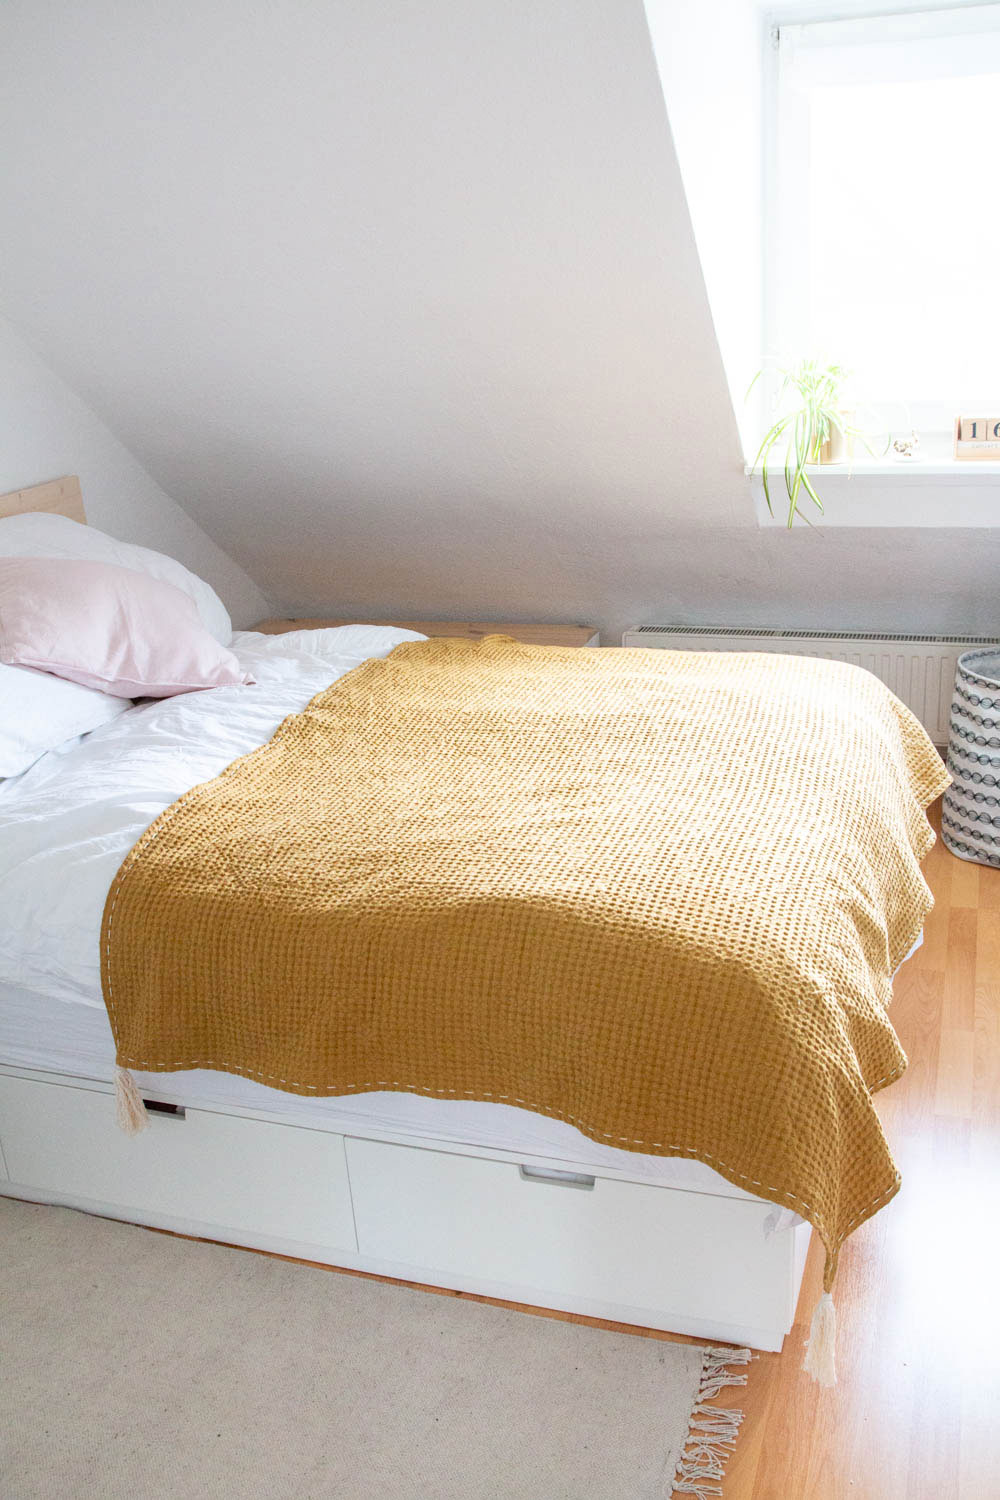 Bett mit Tagesdecke - einfach selber nähen